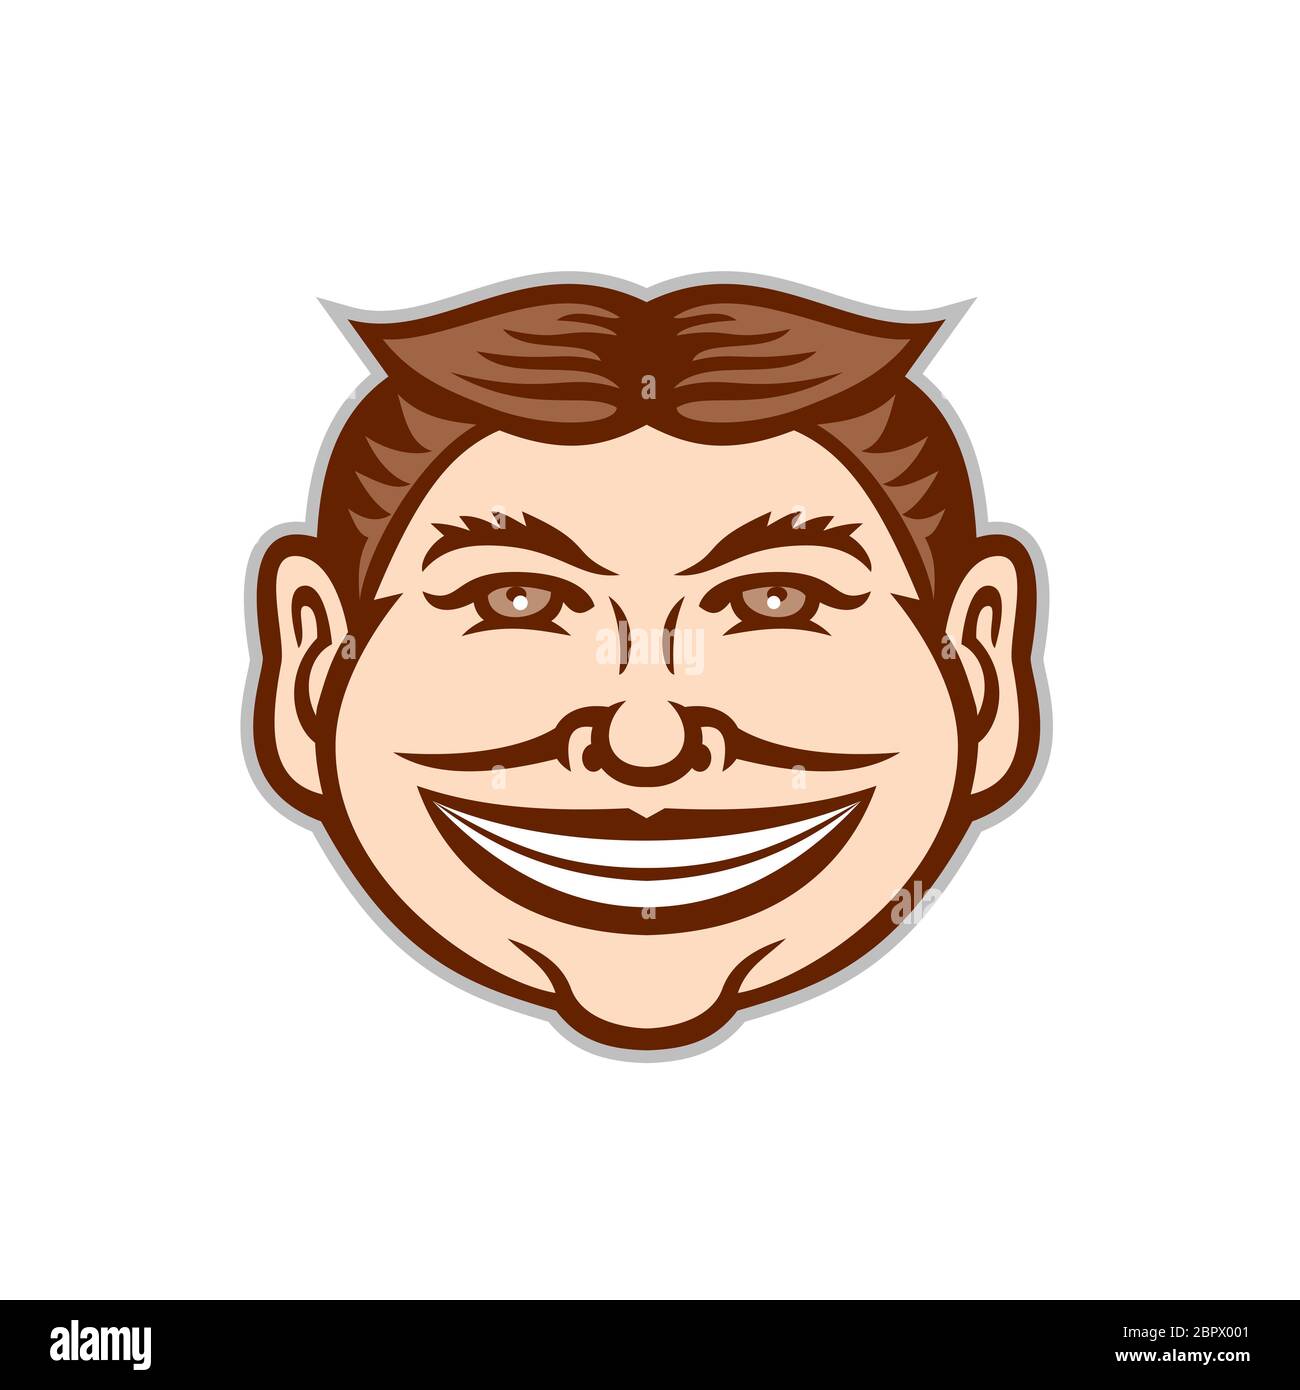 Maskottchen Symbol Abbildung: Leiter ein lustiges Gesicht grinsend, leering, lächelt verschmitzt strahlende Becher mit Haar in der Mitte von vorne gesehen auf isolierten parted Stockfoto